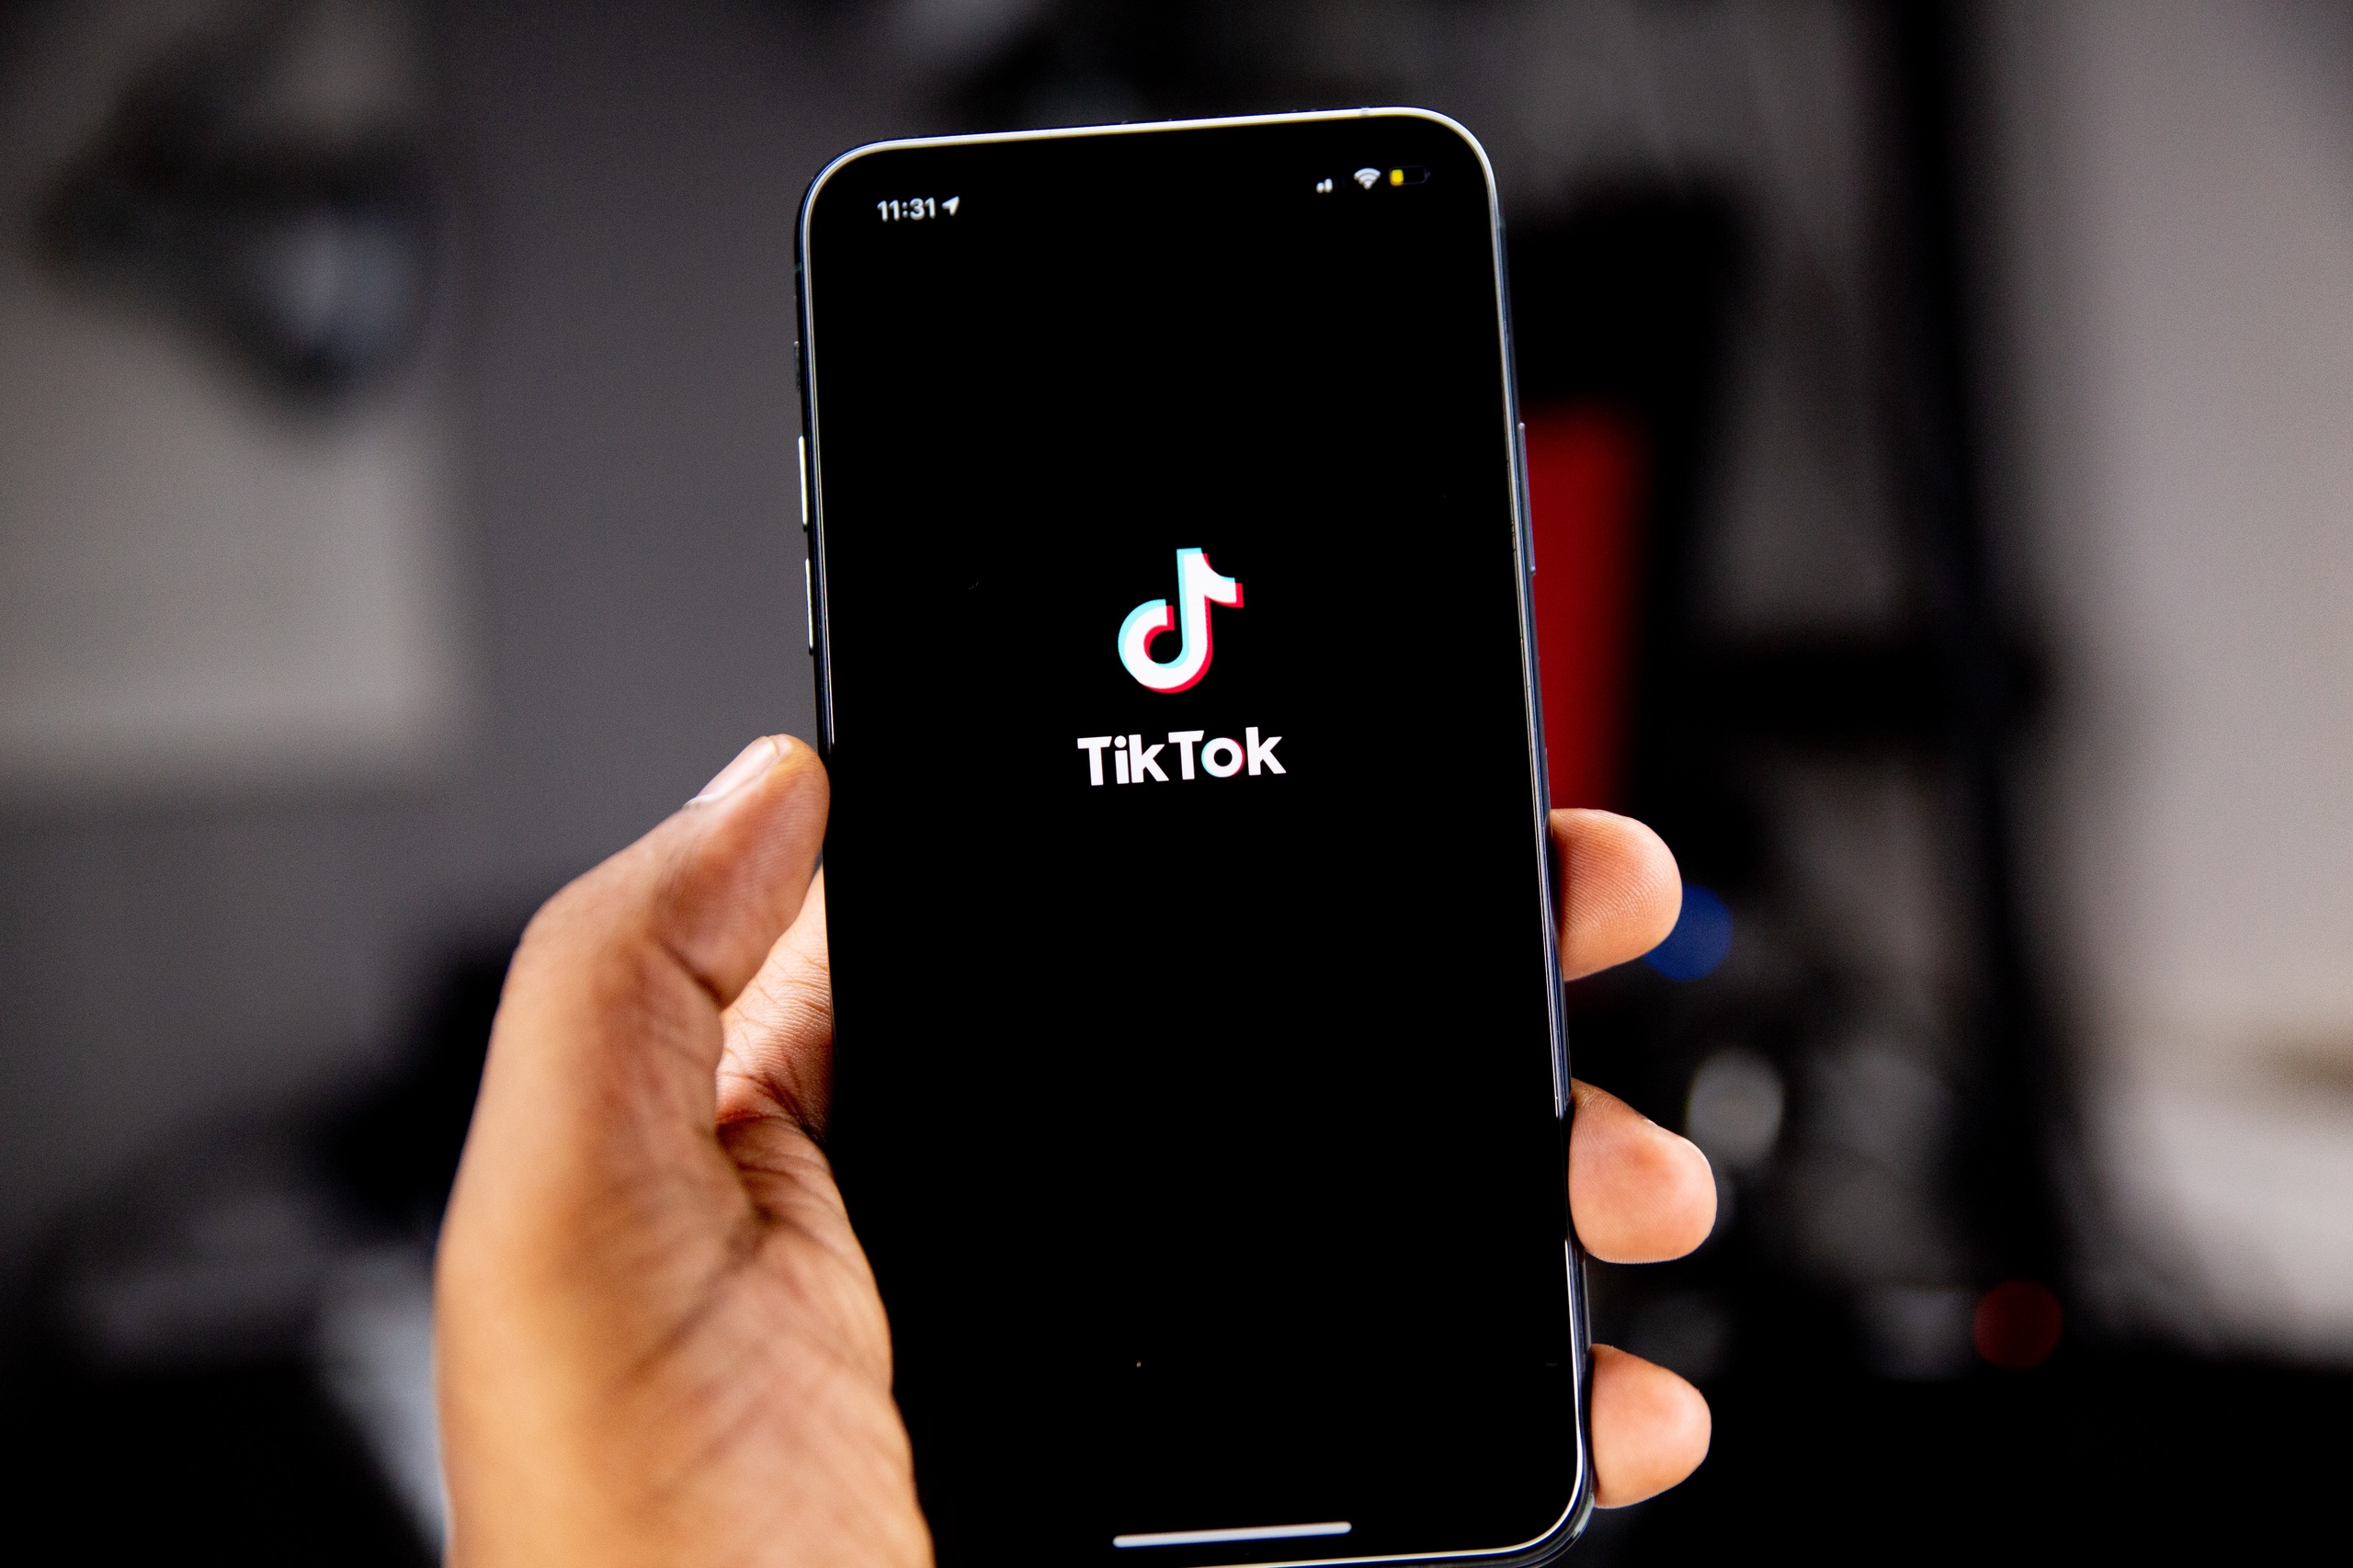 Kabinet roept ambtenaren 'apps als TikTok' te verwijderen